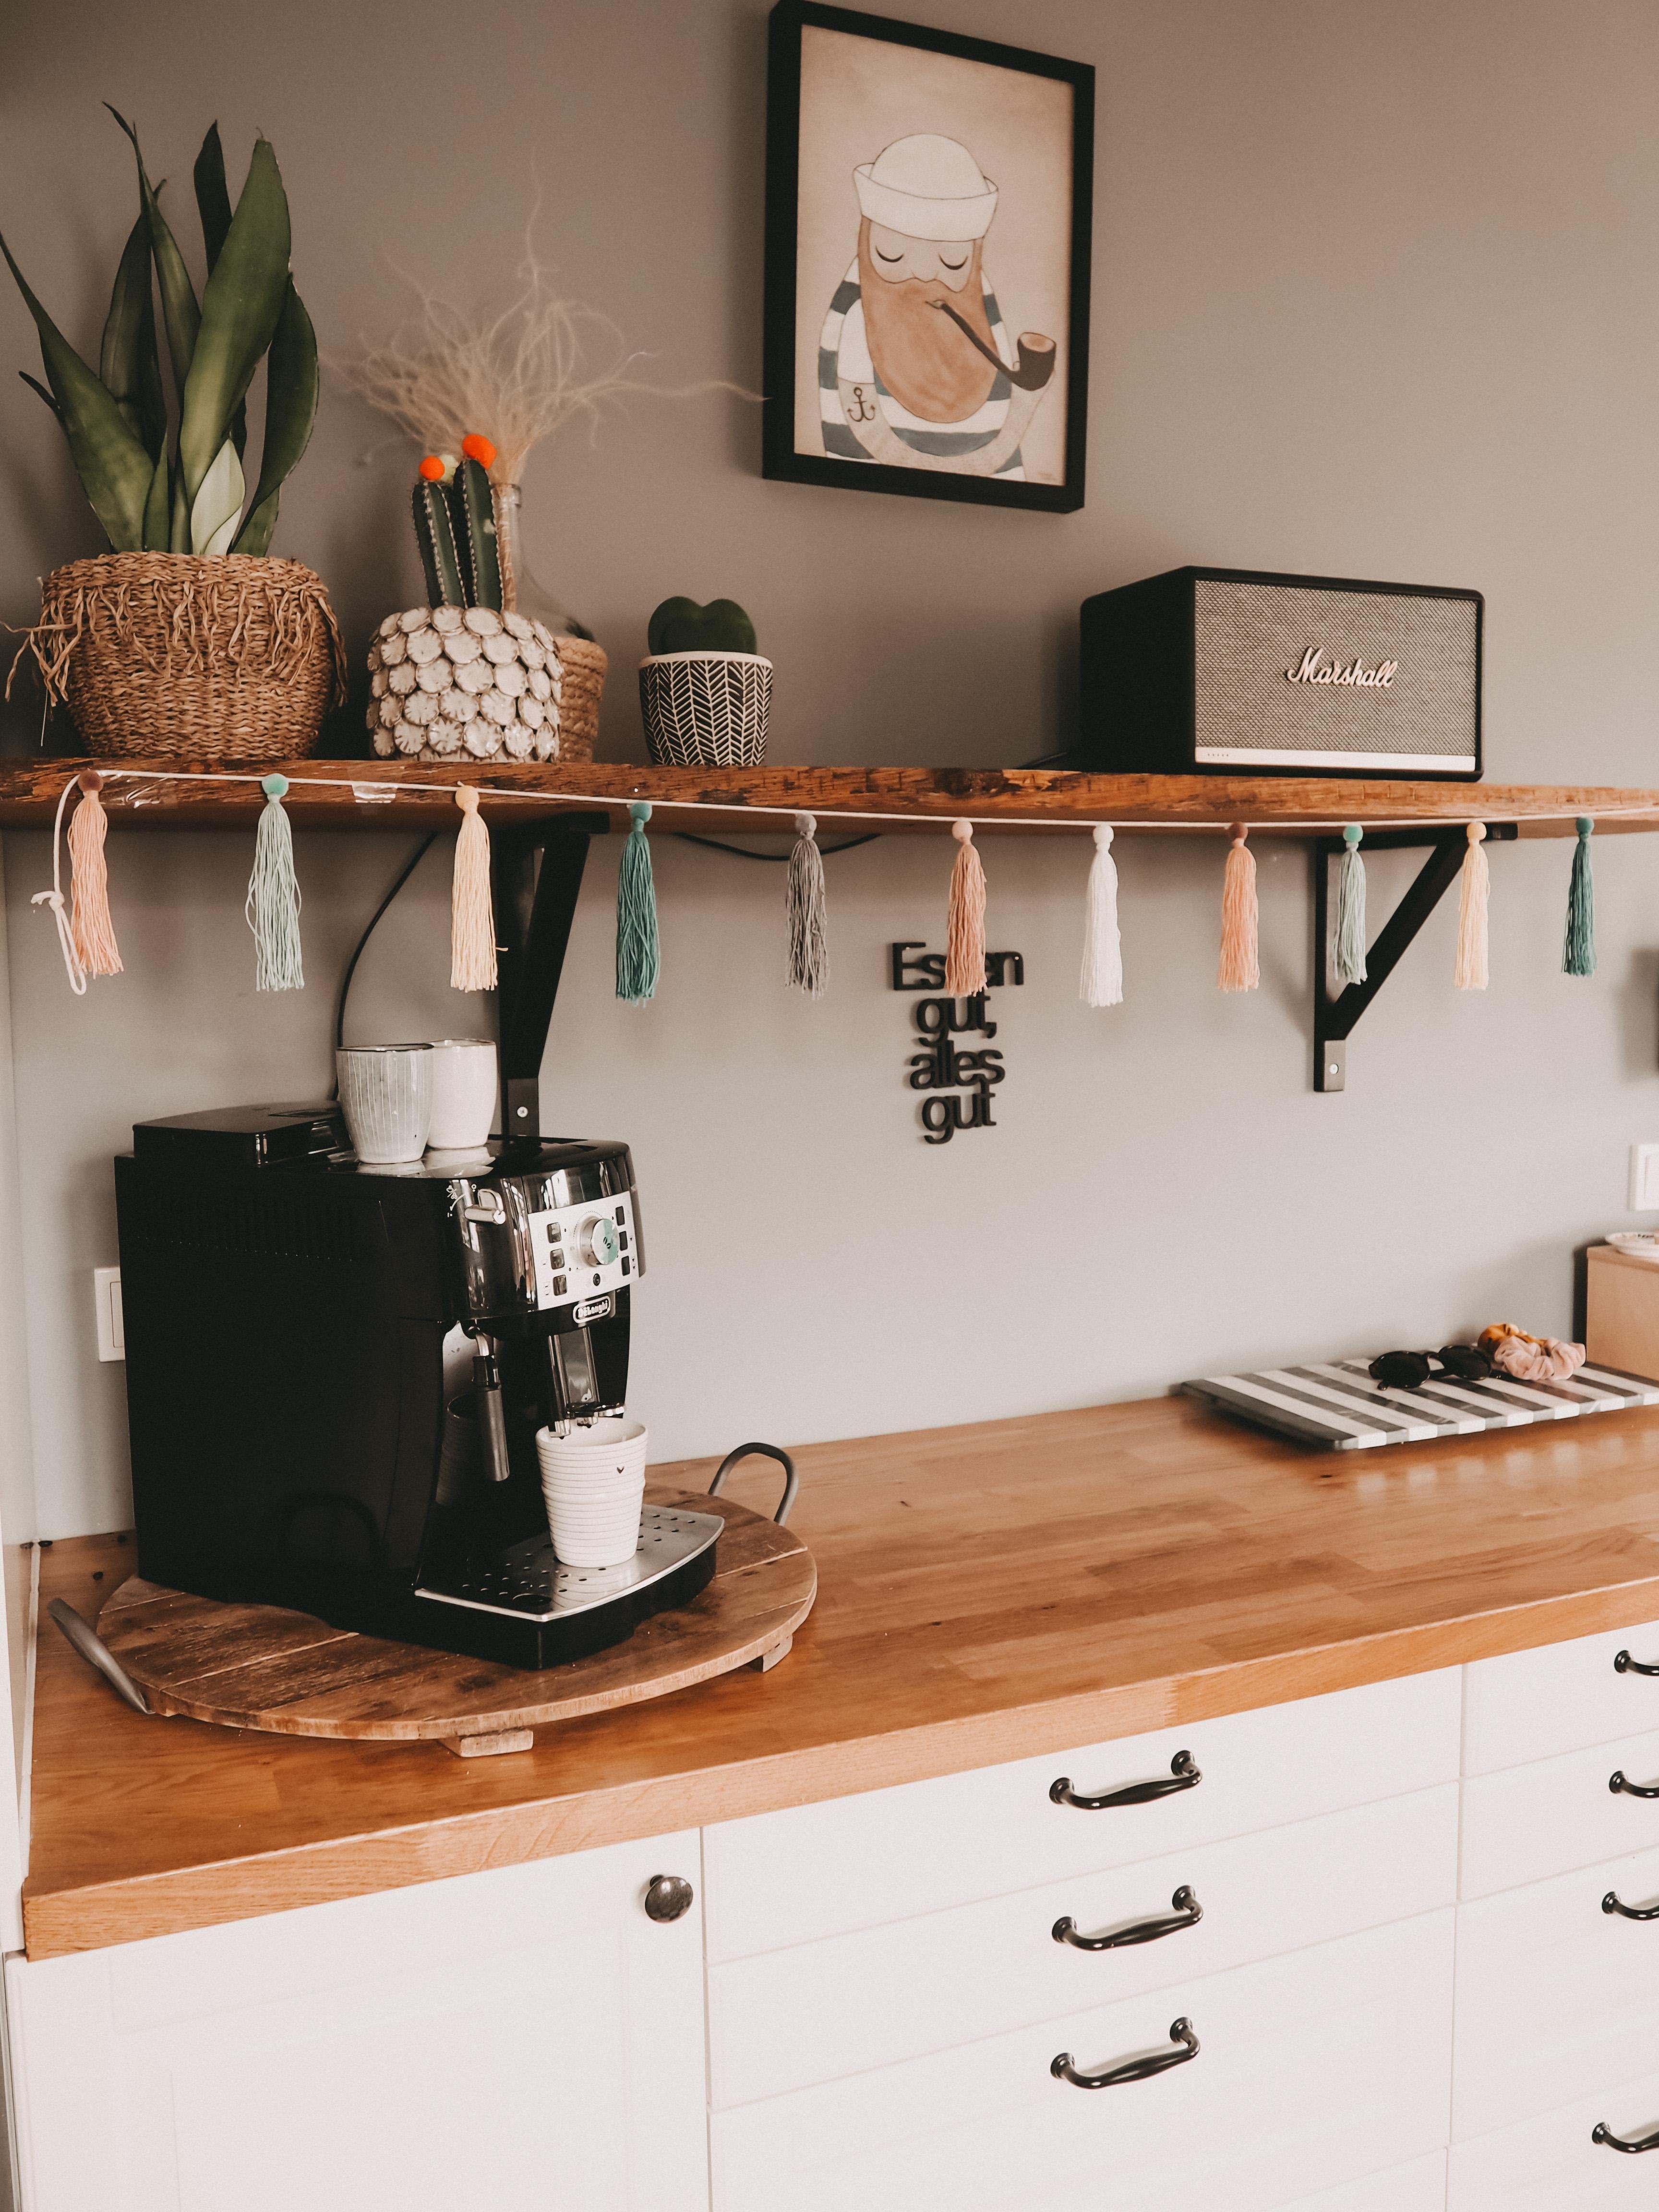 Einen kleinen Einblick in meine Küche 🧡 ohne Kaffee geht hier Morgens leider gar nichts 😅✌🏻 #großekaffeeliebe